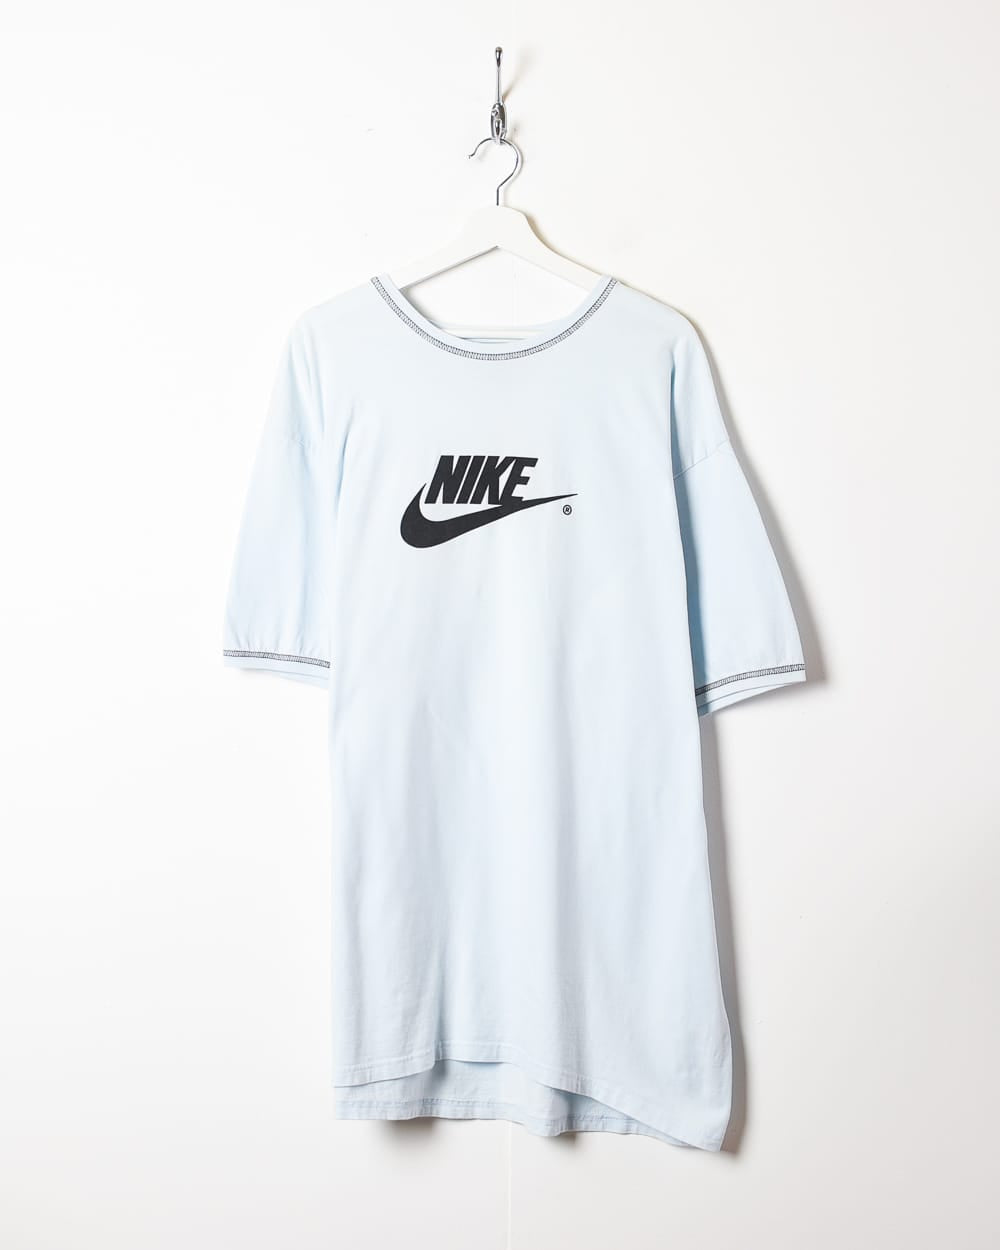 BabyBlue Nike T-Shirt - XX-Large